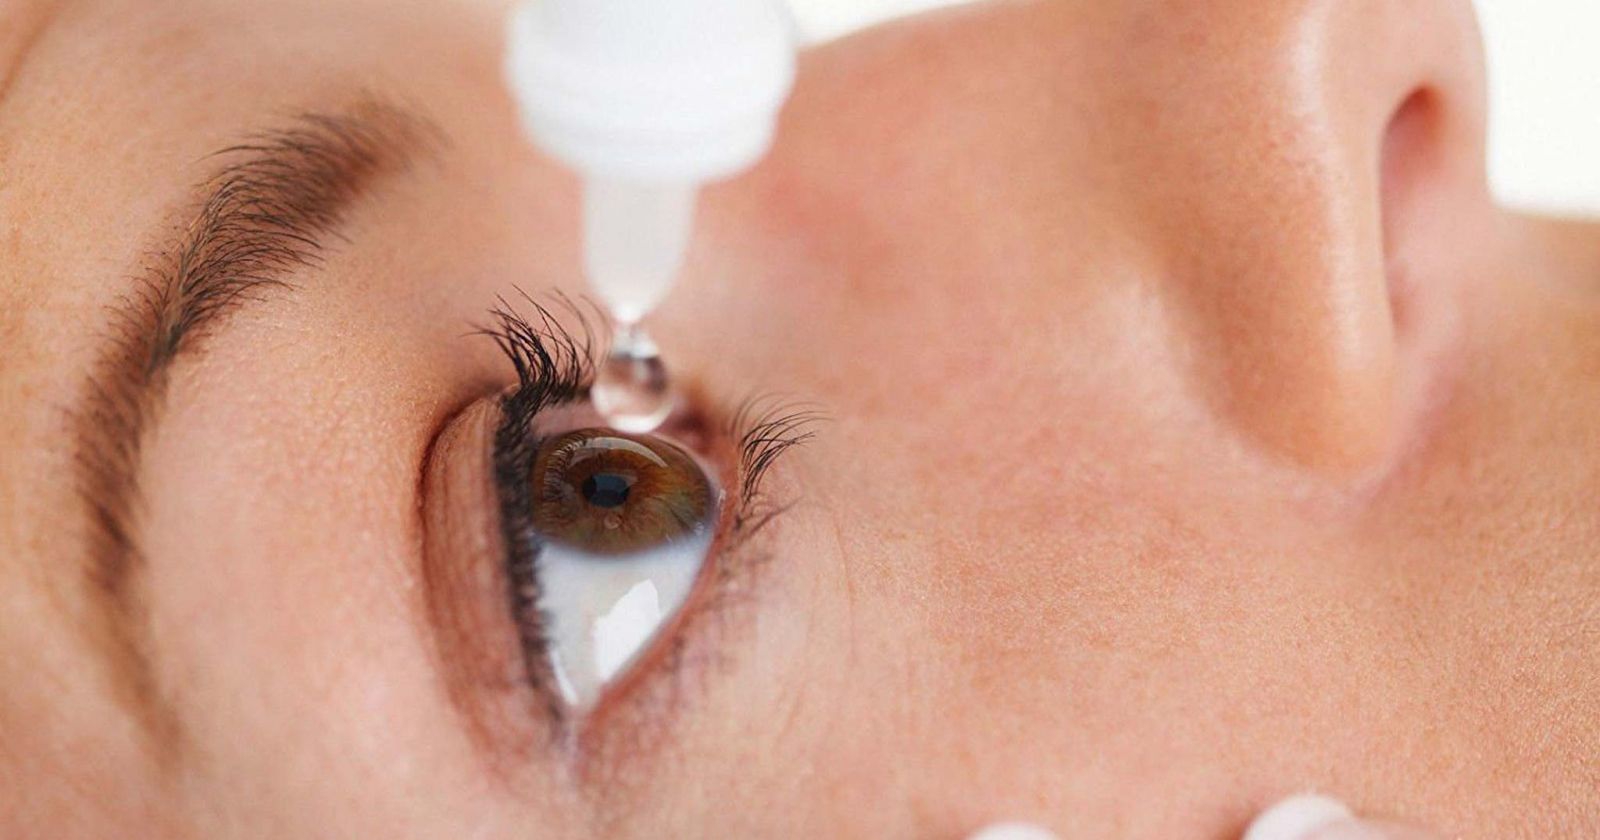 Có những cách chăm sóc mắt hàng ngày để tránh đau mắt đỏ?
